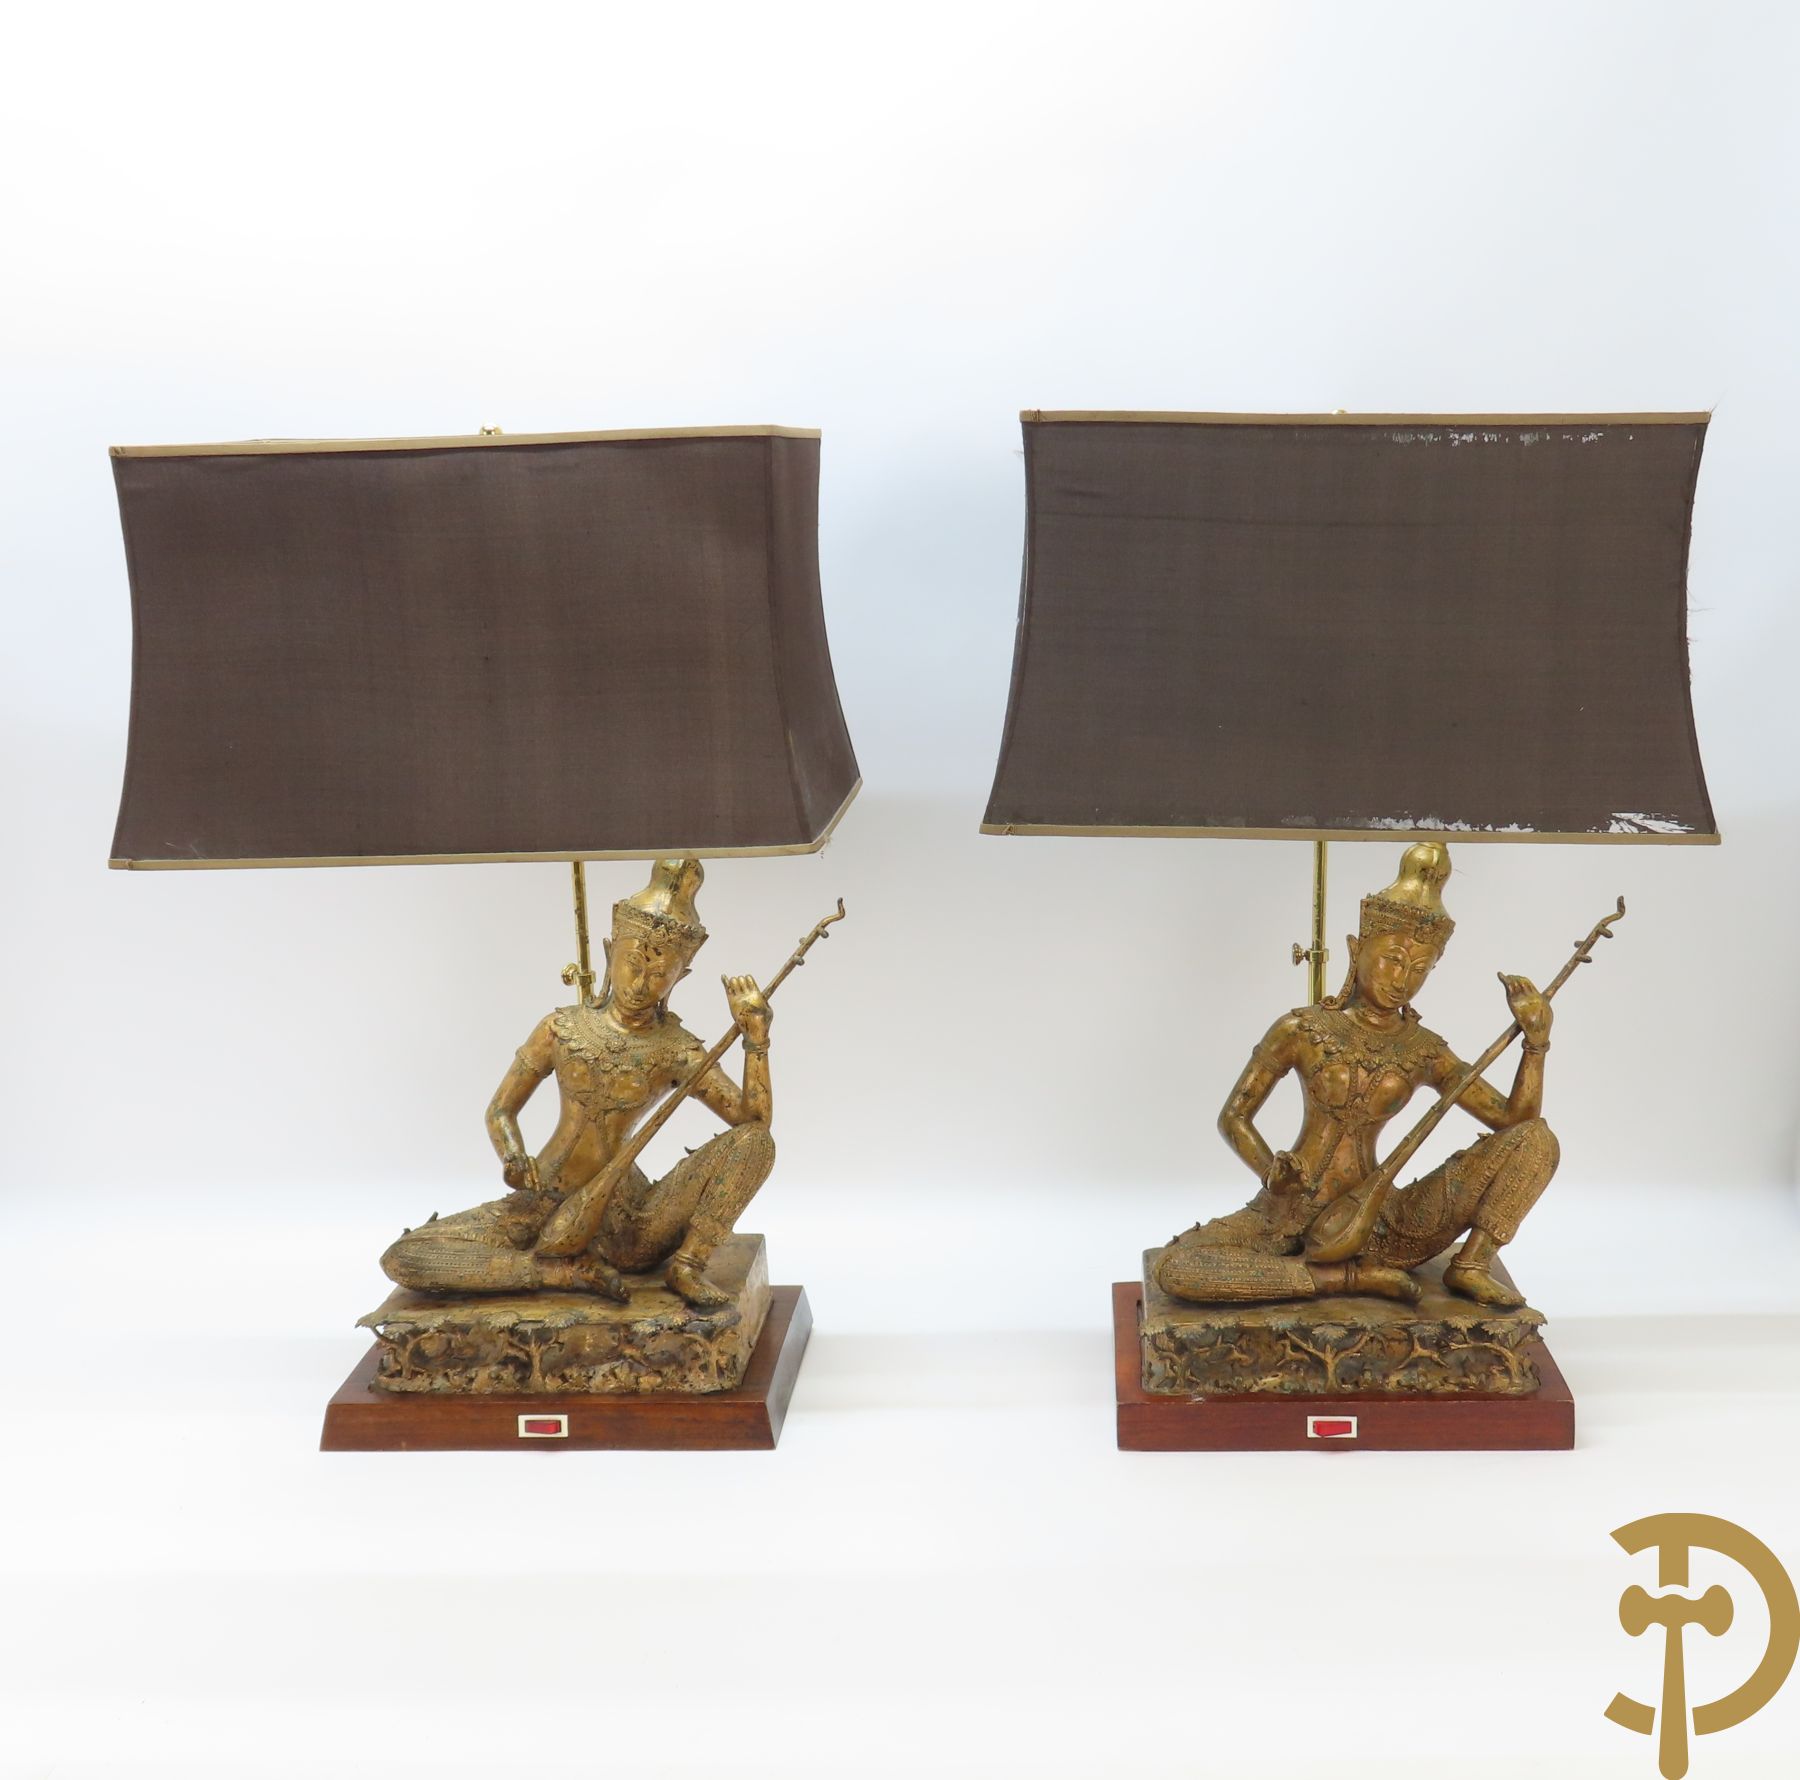 Paar zittende bronzen boedhistische figuren met citaar gemonteerd als lampadaire